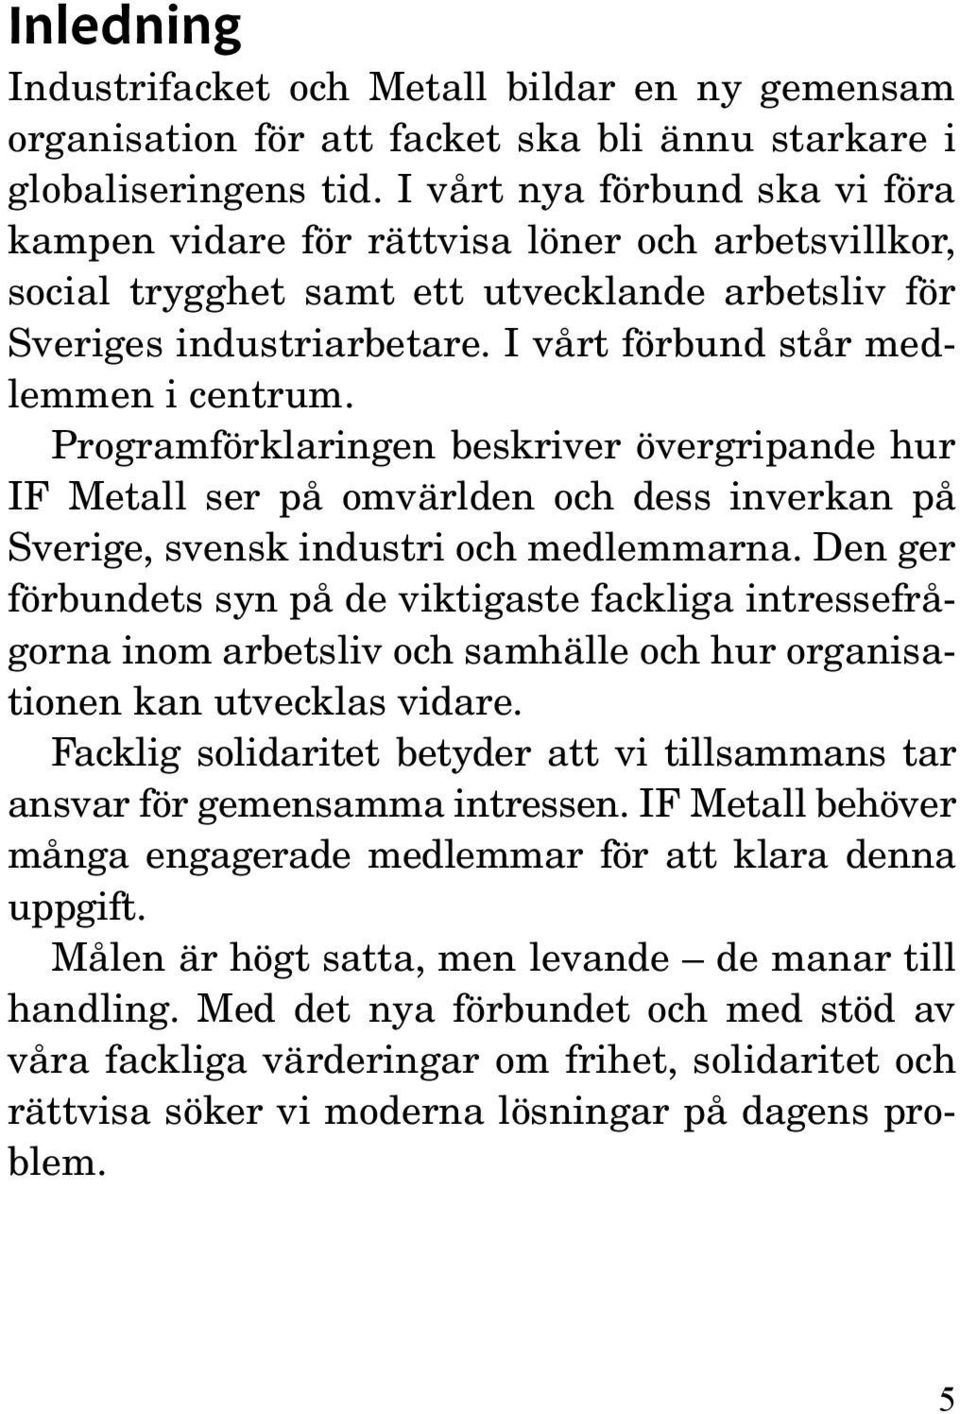 I vårt förbund står medlemmen i centrum. Programförklaringen beskriver övergripande hur IF Metall ser på omvärlden och dess inverkan på Sverige, svensk industri och medlemmarna.